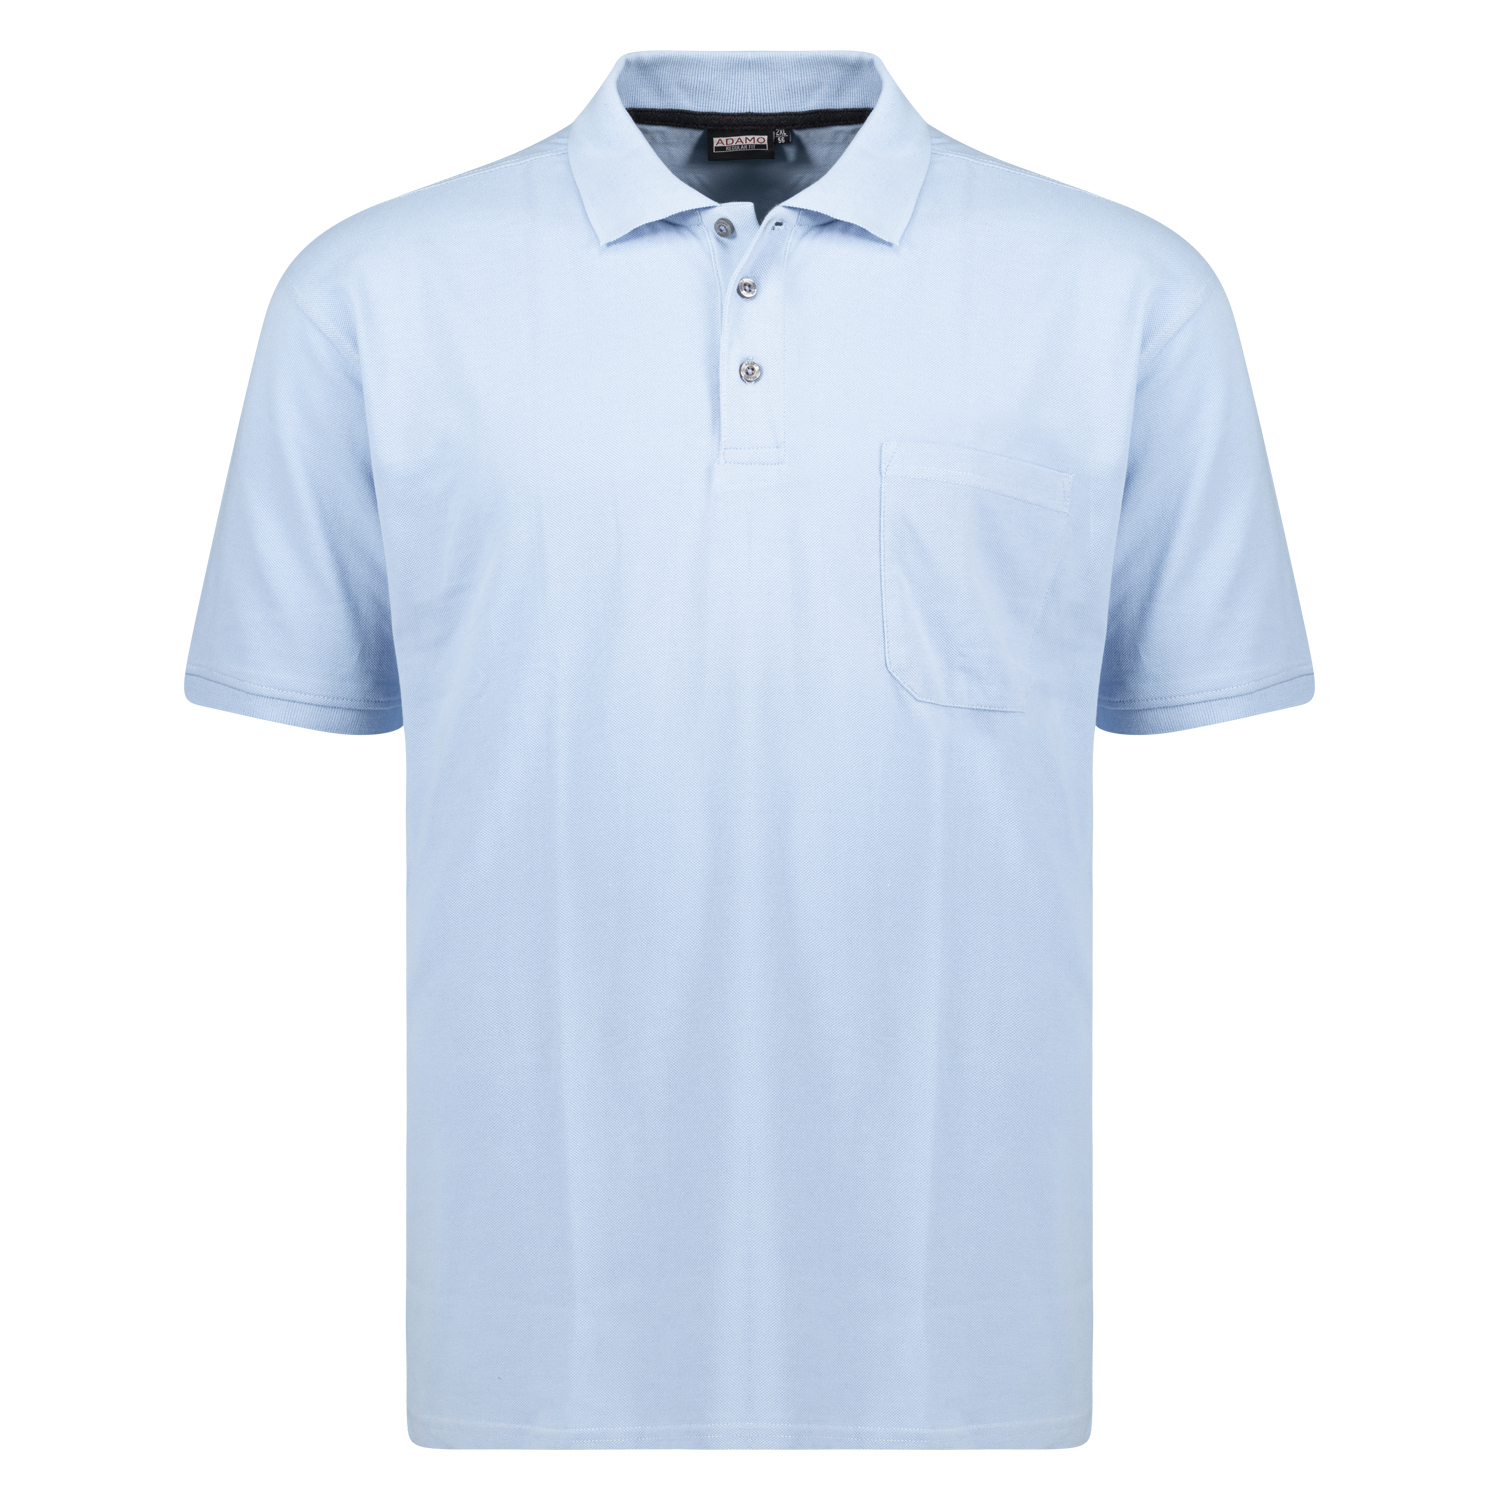 Hellblaues Kurzarm Polo Shirt KLAAS von ADAMO in Pique Qualität für Herren in großen Größen bis 10XL